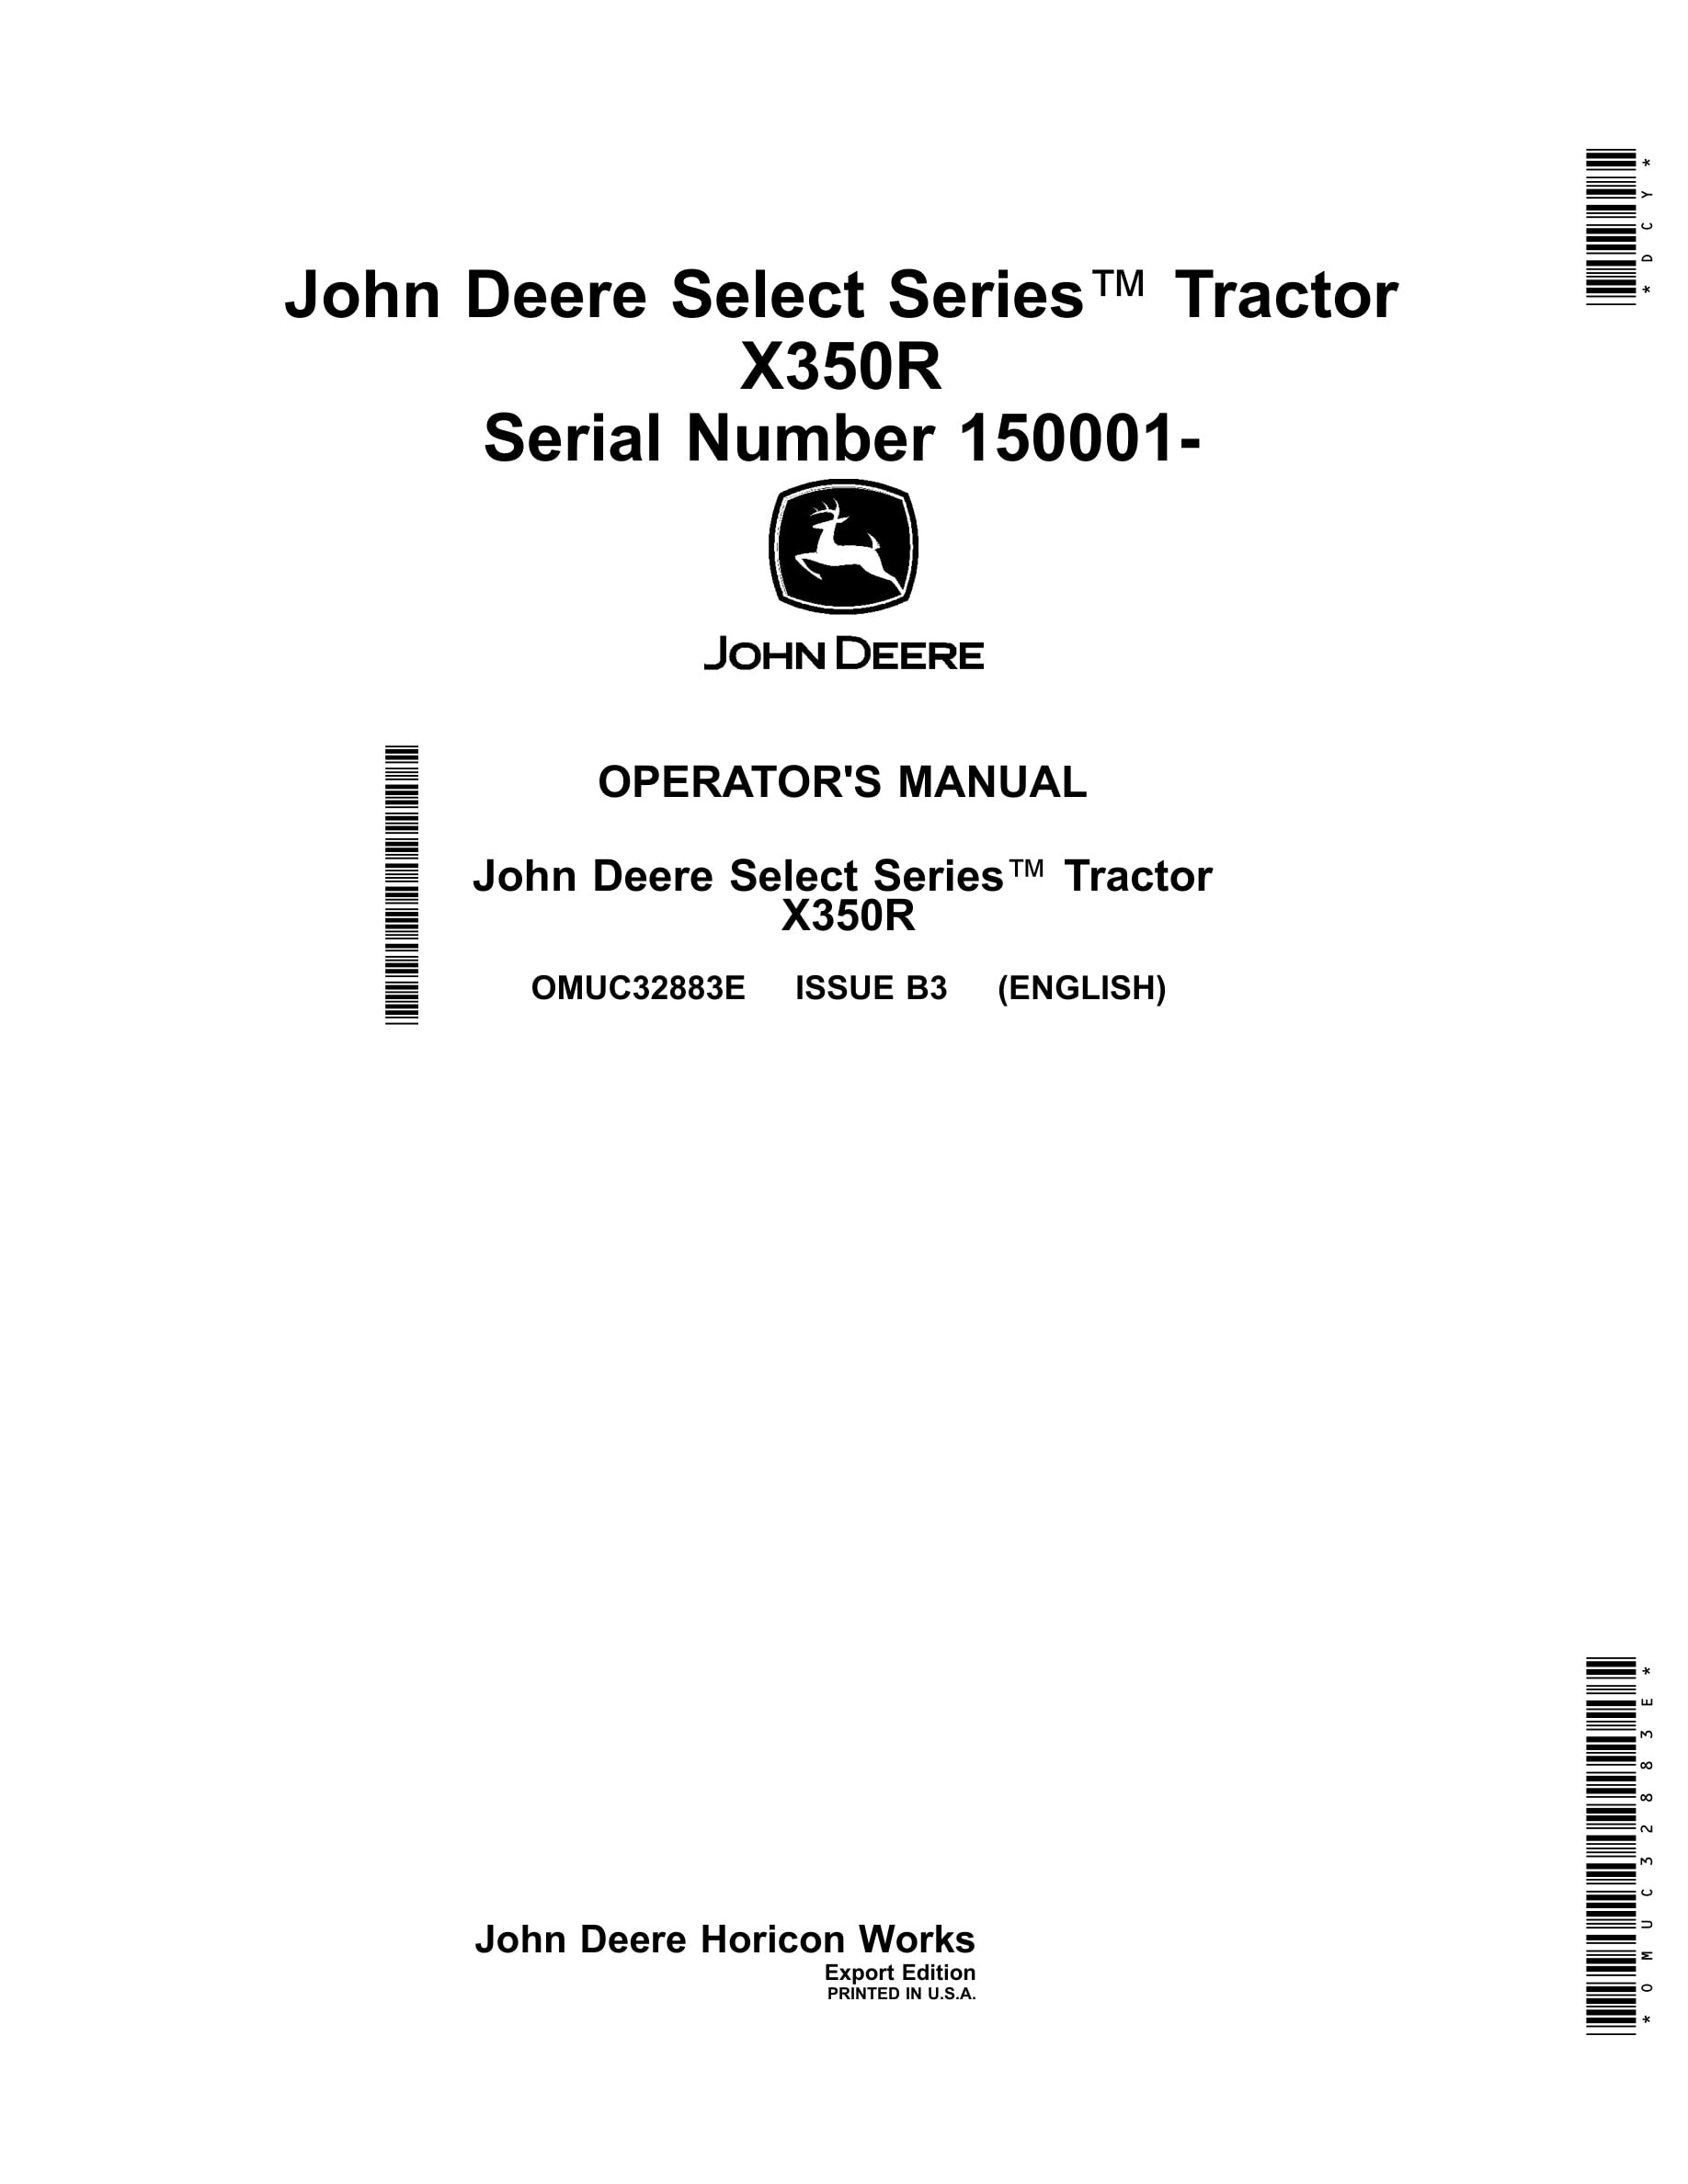 John Deere X350r Tractors Operator Manuals OMUC32883e-1